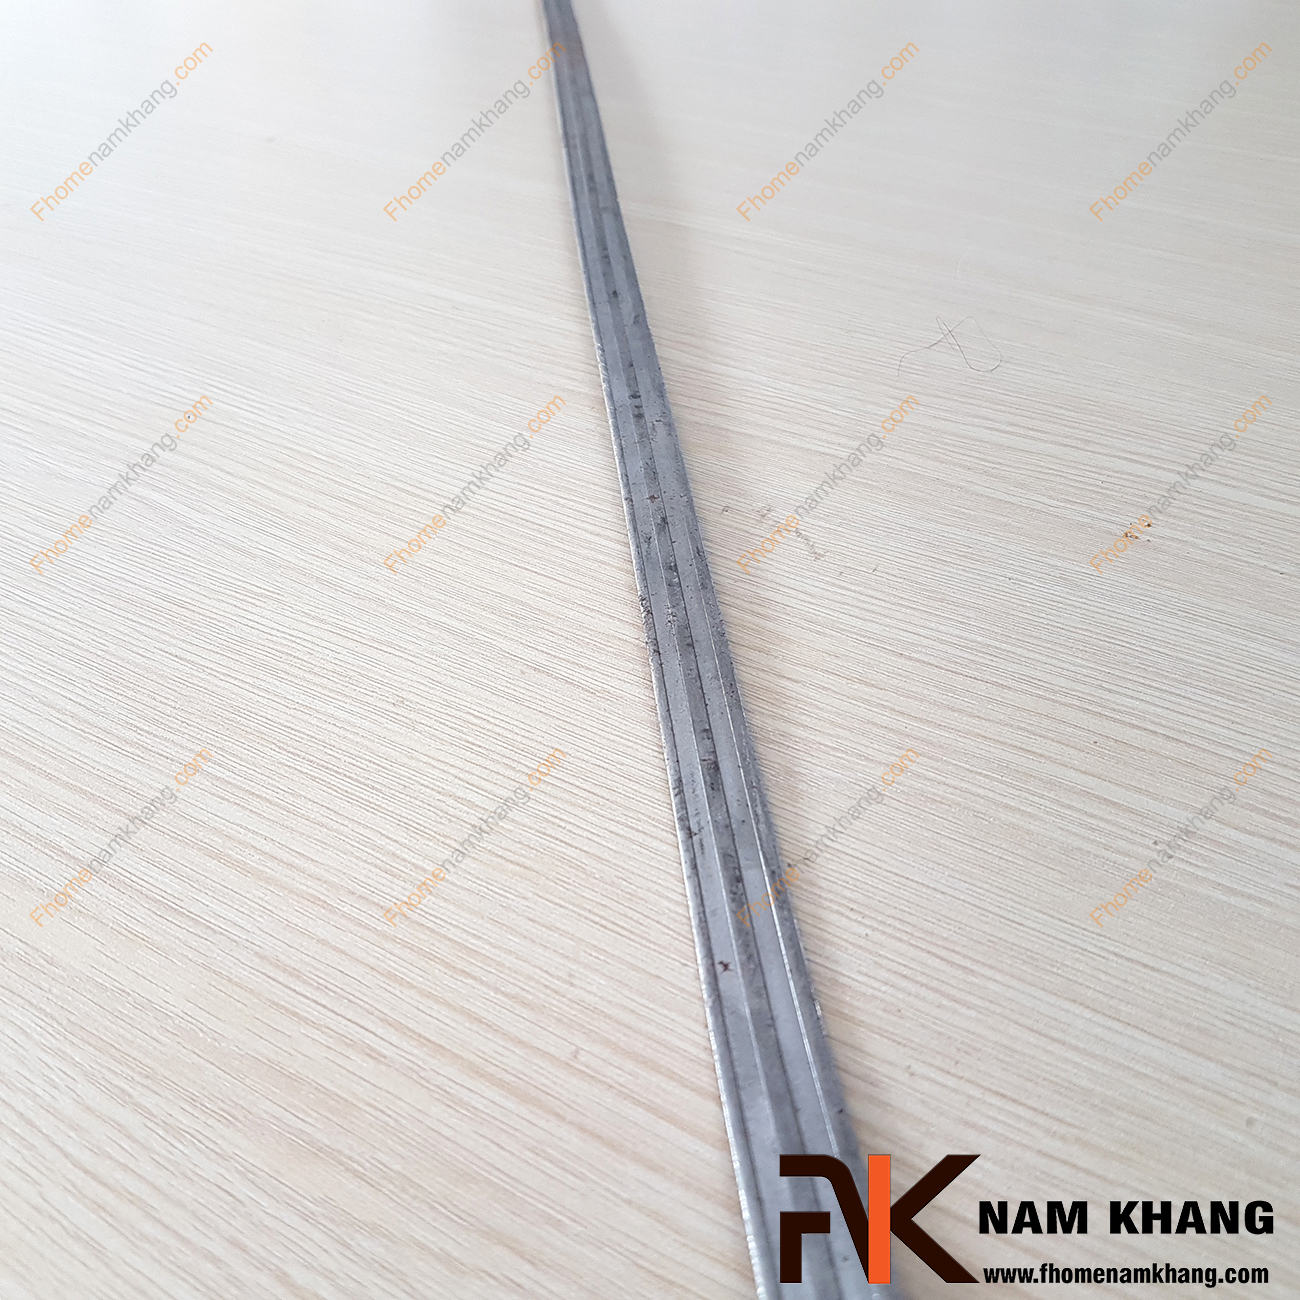 Thép la đai NKS-34 là sản phẩm phụ kiện thép mỹ thuật thường được sử dụng trên các mẫu thiết kế lan can, cầu thang, cửa cổng. Công dụng chính của thép la đai